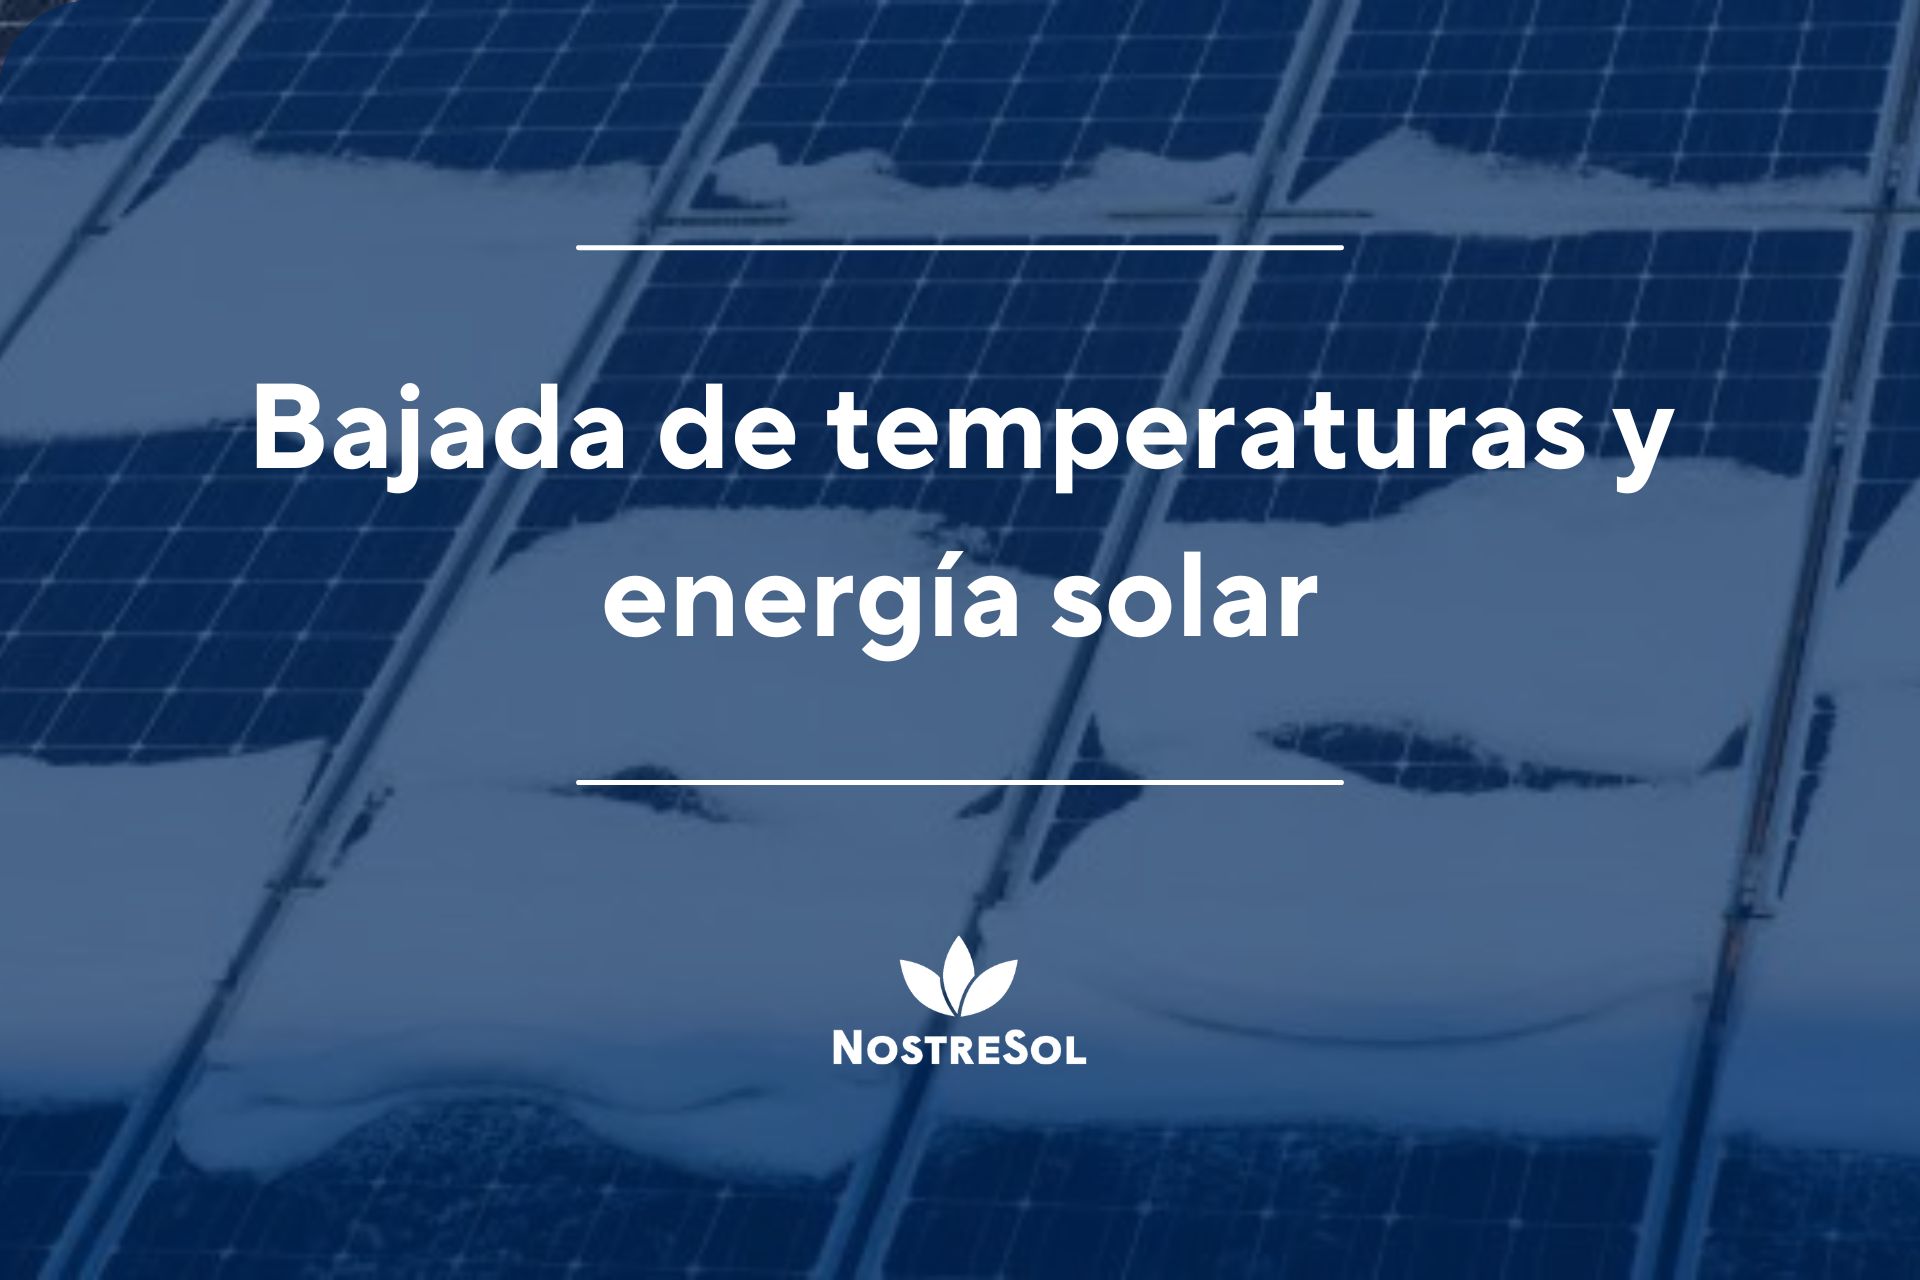 Bajada de temperaturas y energía solar - Nostresol